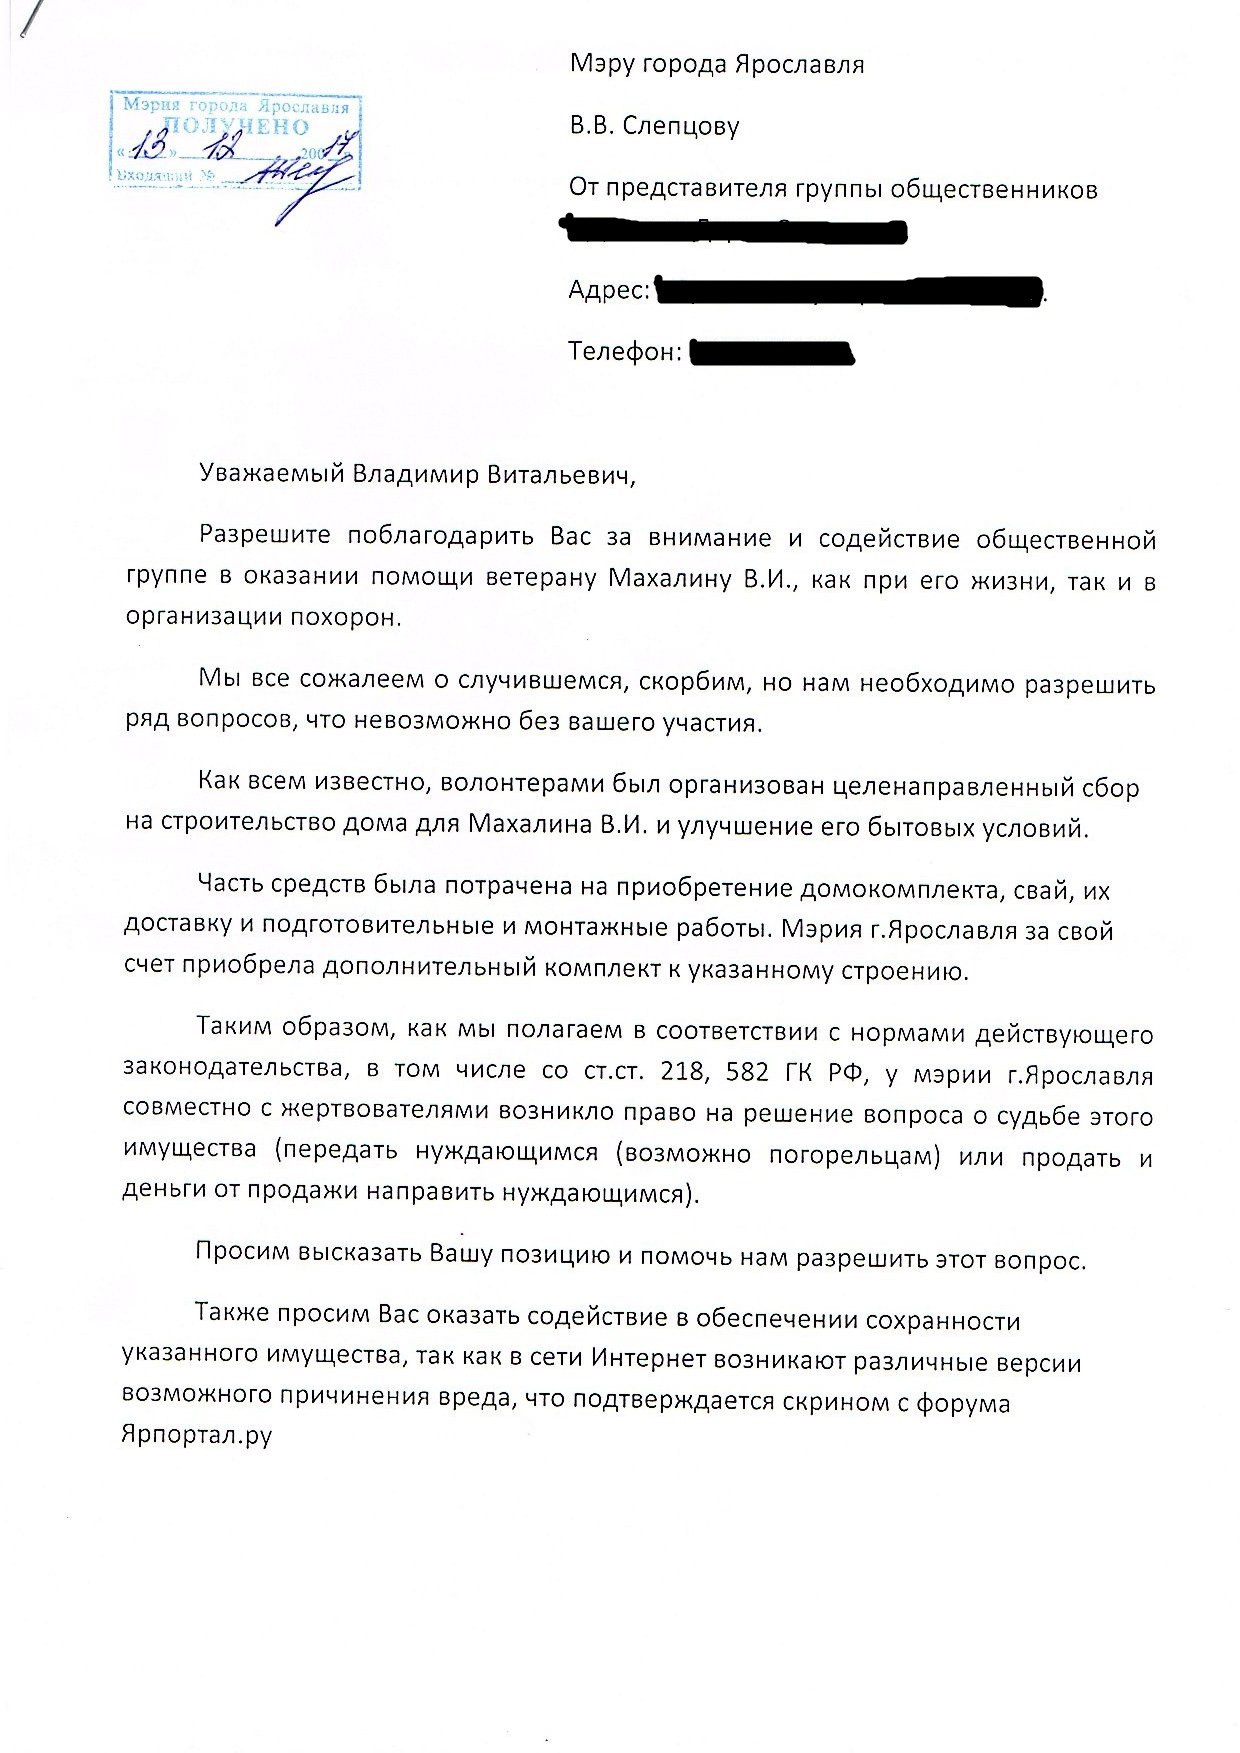 Письмо Слепцову